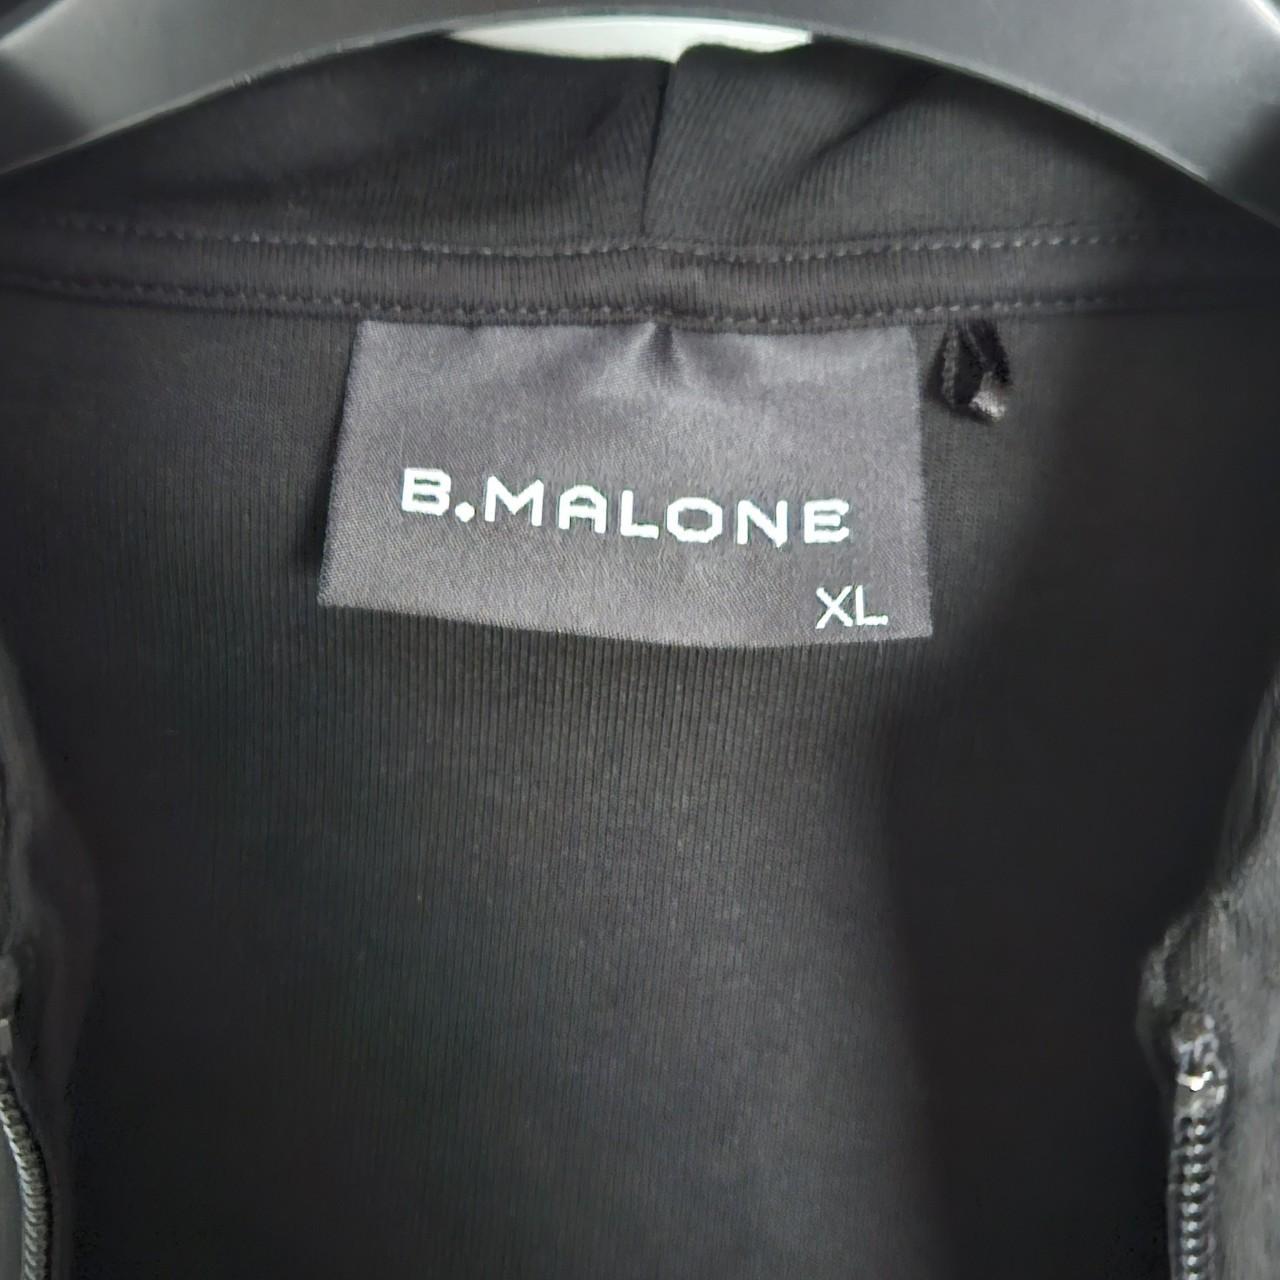 B.Malone tracksuit jacket XL like new worn a couple... - Depop